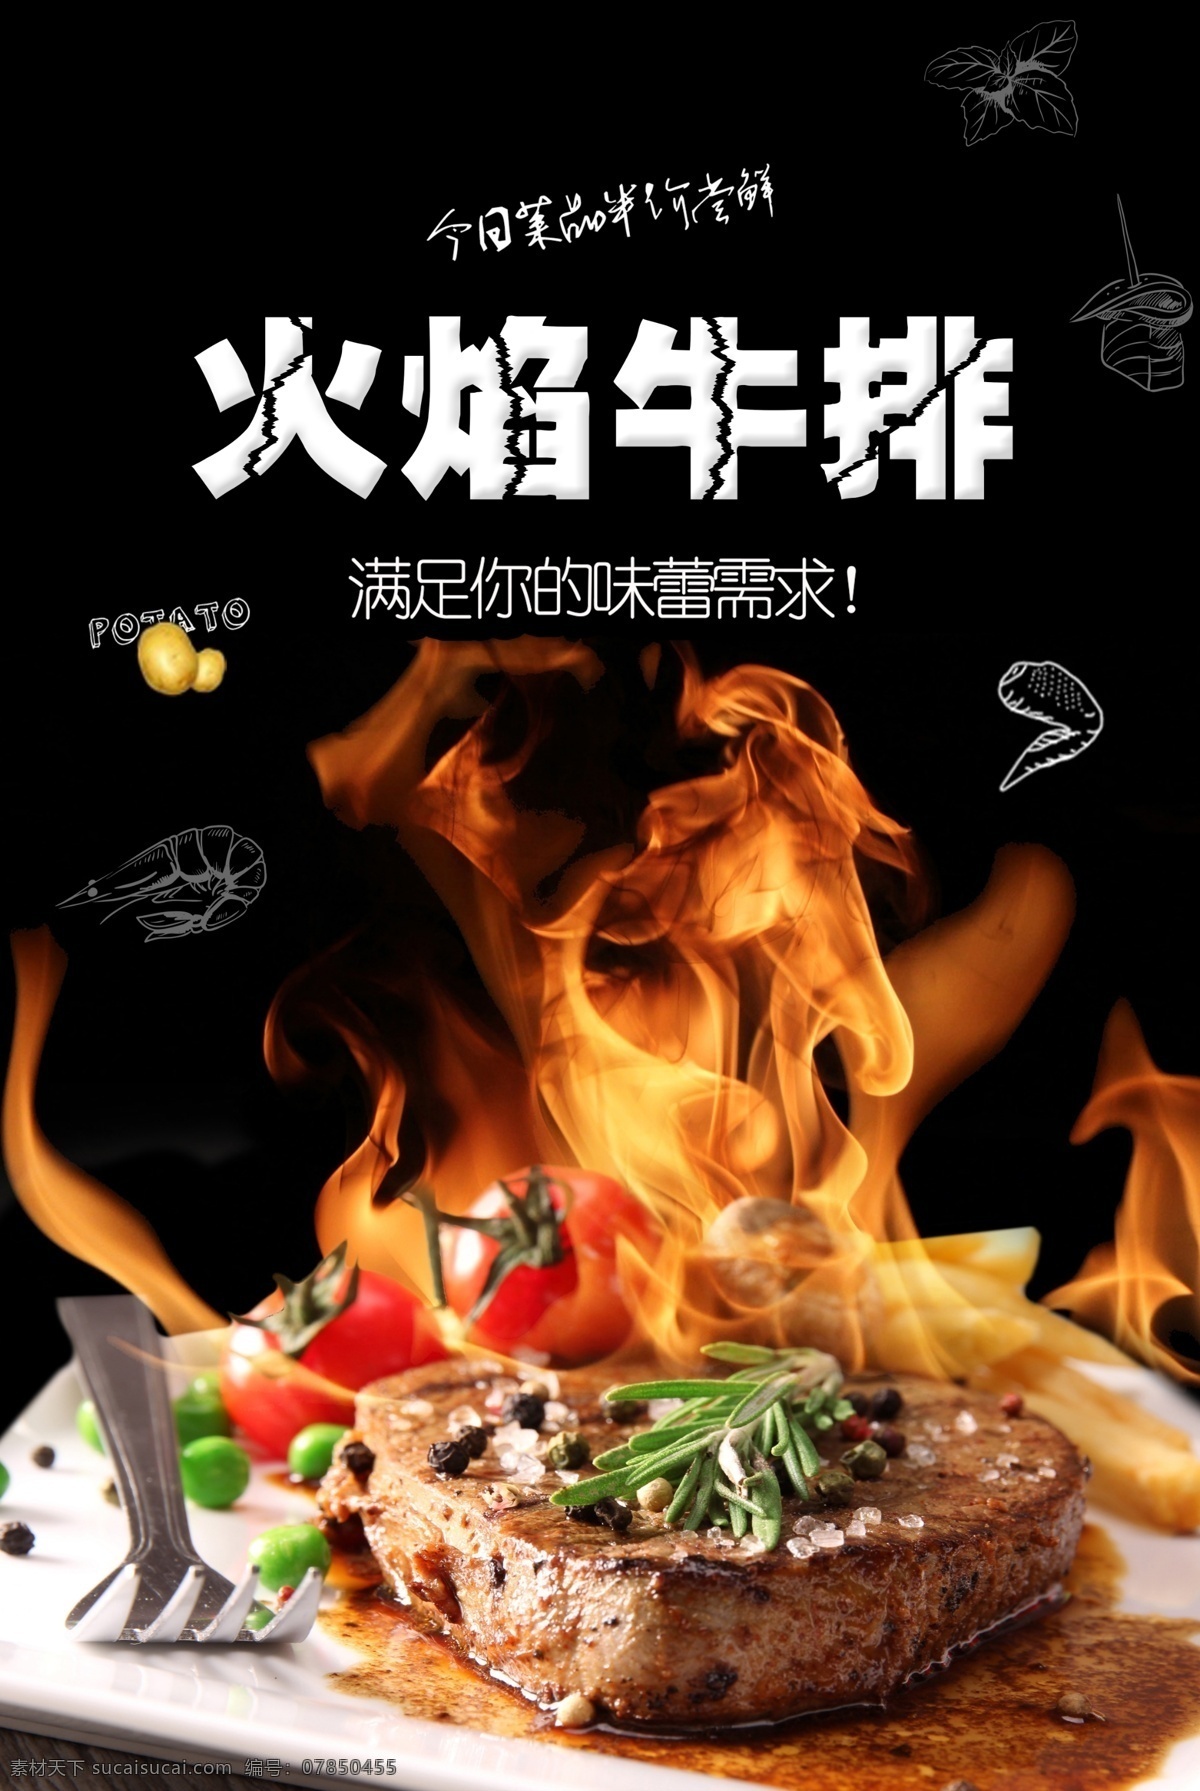 火焰 牛排 美食 食 材 活动 宣传海报 火焰牛排 食材 宣传 海报 餐饮美食 类